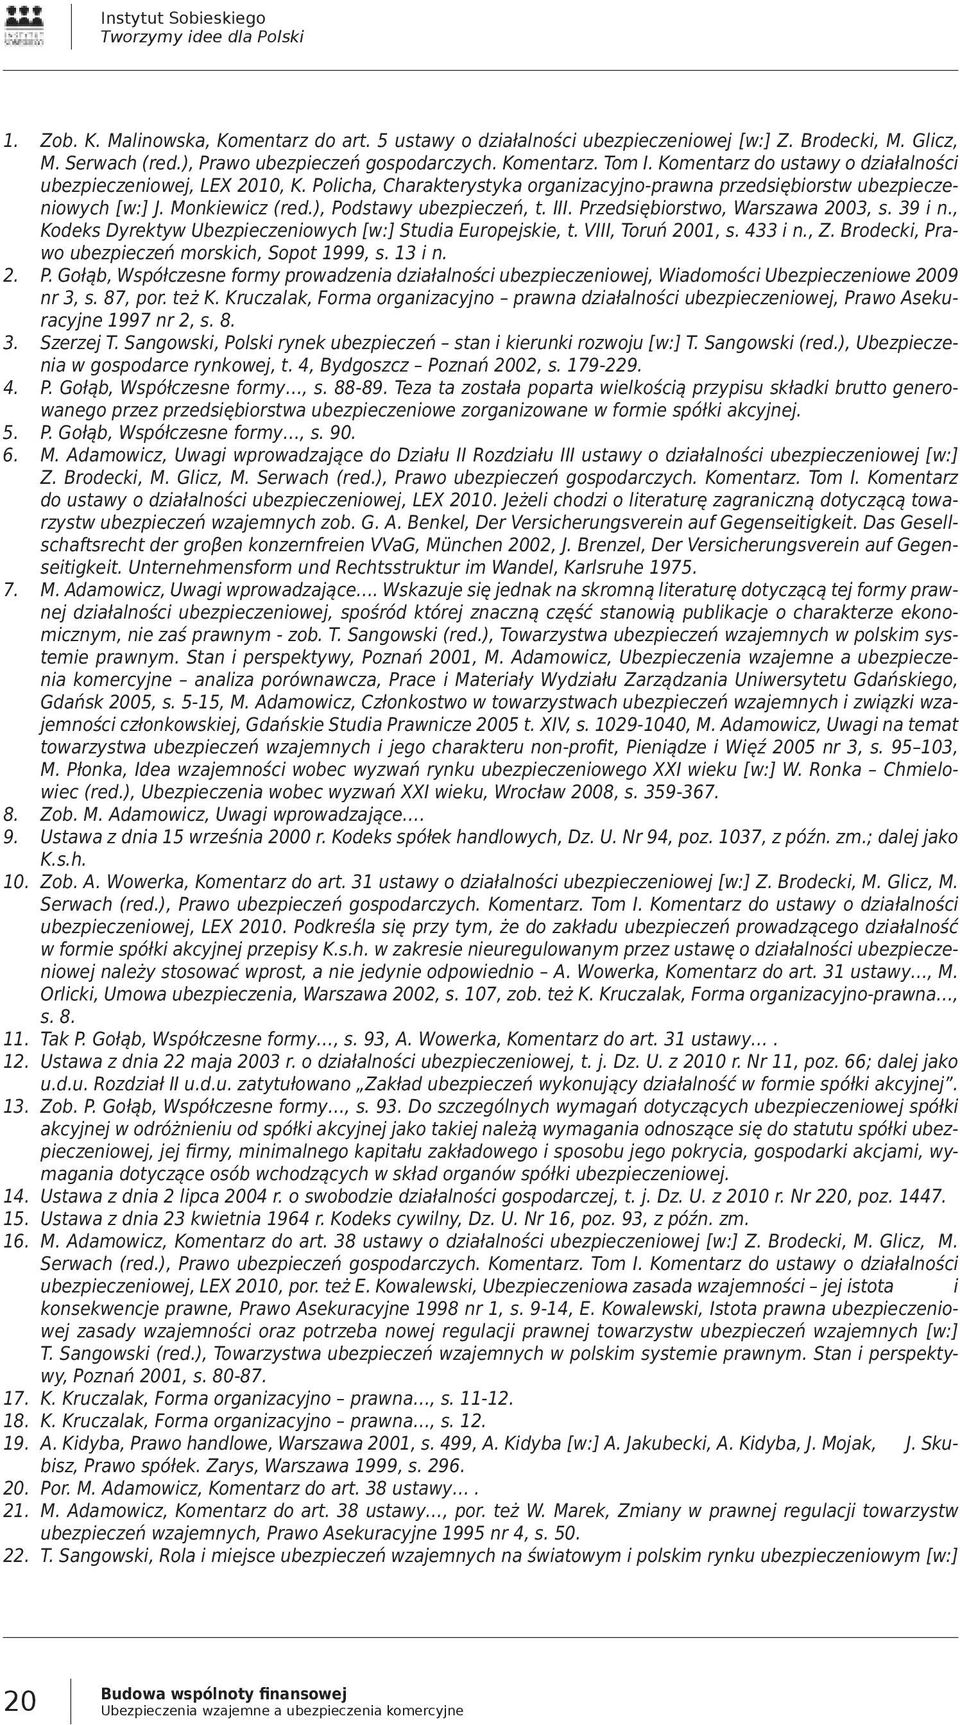 Policha, Charakterystyka organizacyjno-prawna przedsiębiorstw ubezpieczeniowych [w:] J. Monkiewicz (red.), Podstawy ubezpieczeń, t. III. Przedsiębiorstwo, Warszawa 2003, s. 39 i n.